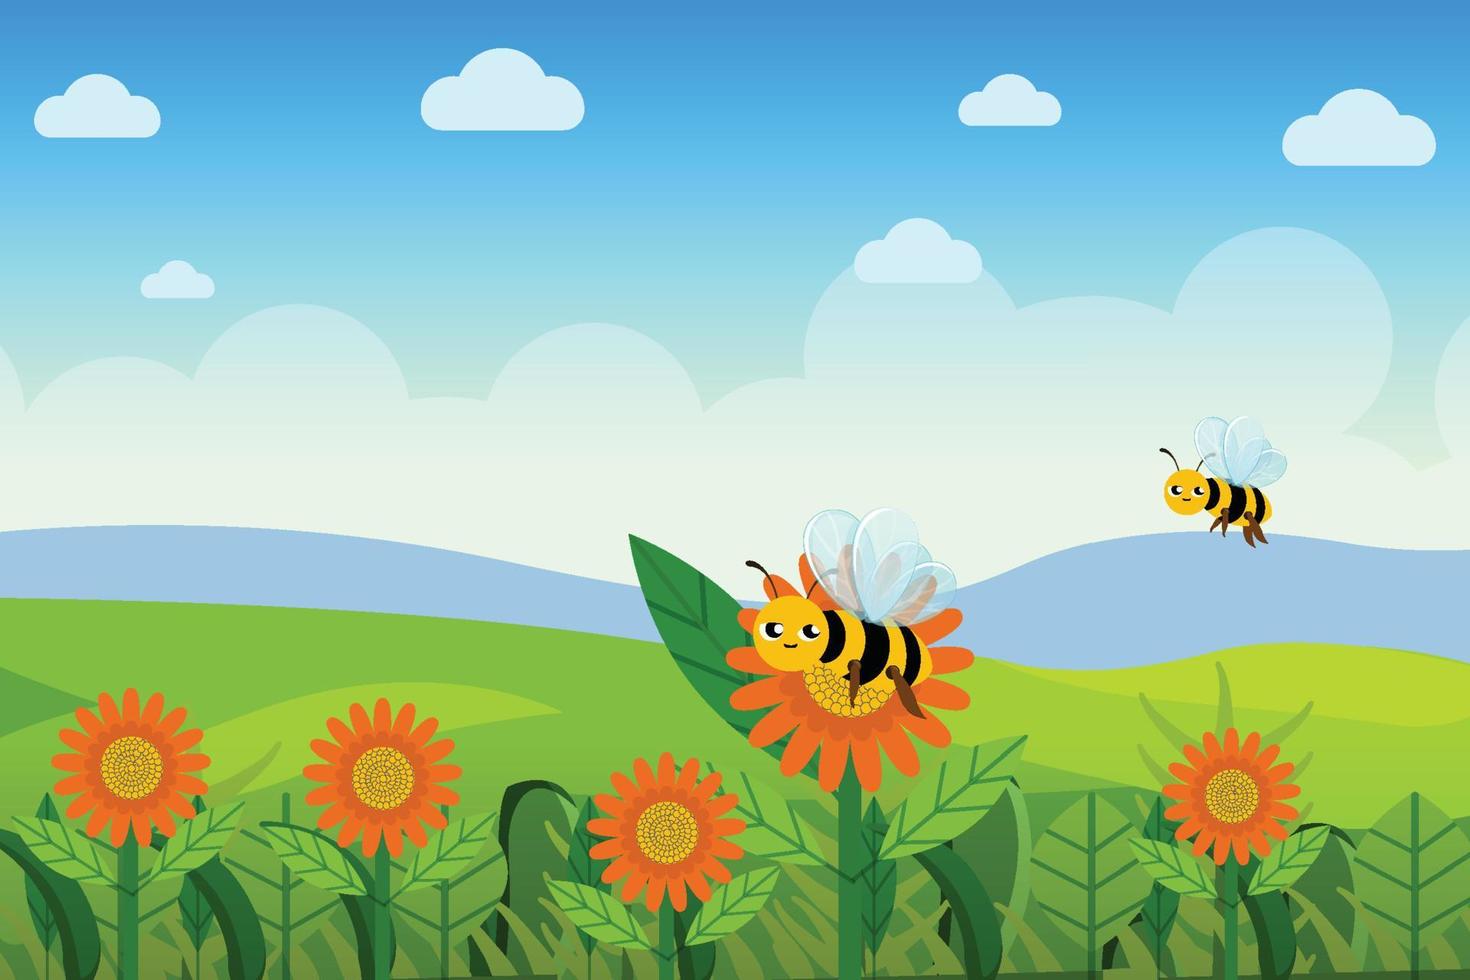 bin flyger över blomsterträdgården och samlar honung från växtvektorkonceptet. söta leende bin flyger och samlar nektar från daisy flowers vektor. grönland med blomsterträdgård och blå himmel. vektor